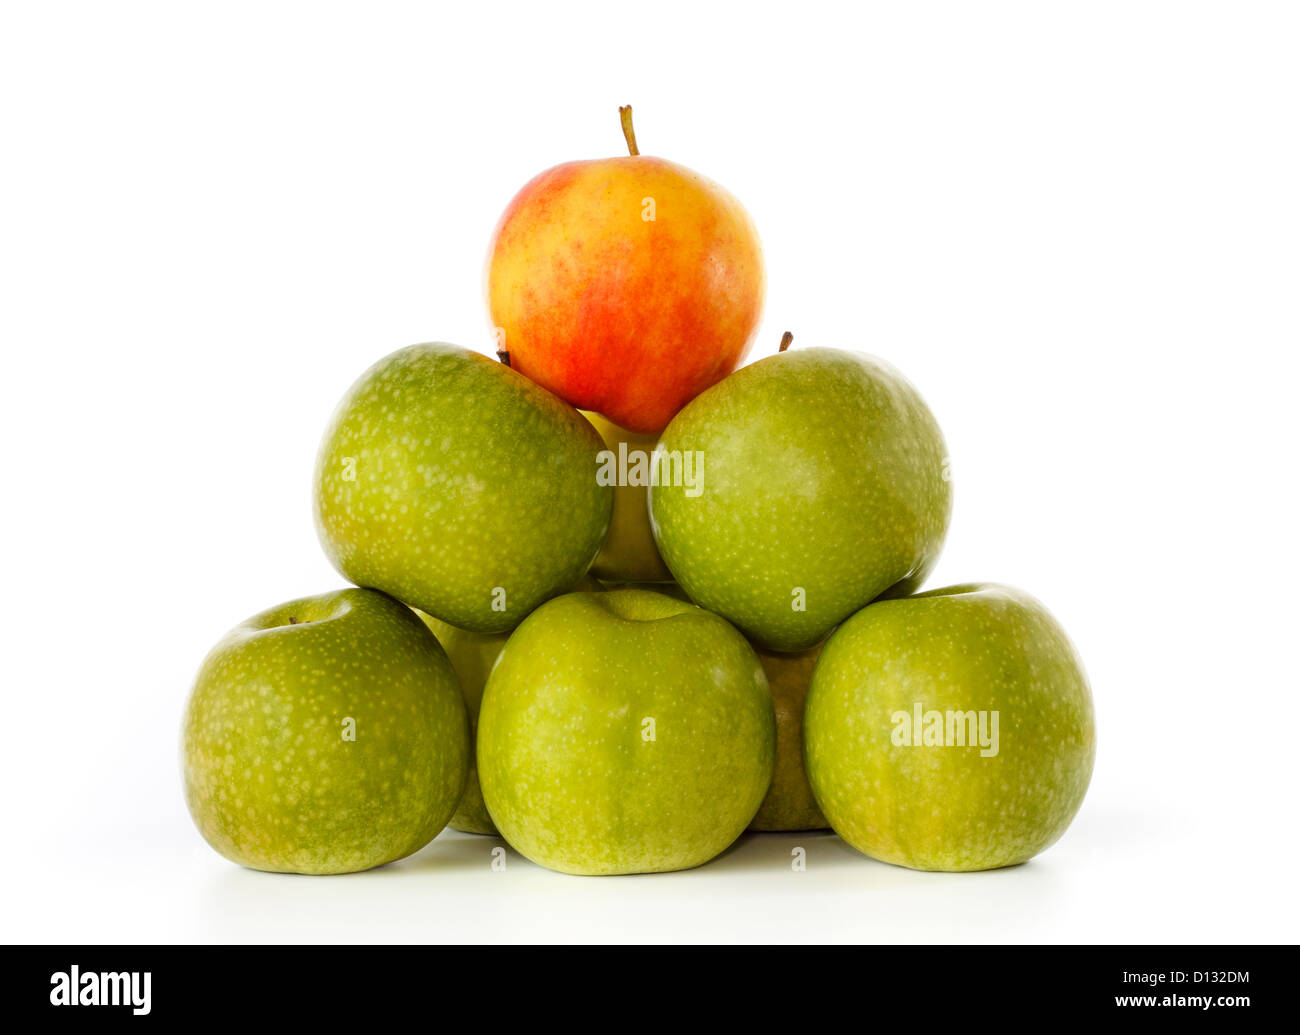 Pila di mela verde e uno giallo con la colorazione rossa sulla parte superiore, contro uno sfondo bianco Foto Stock